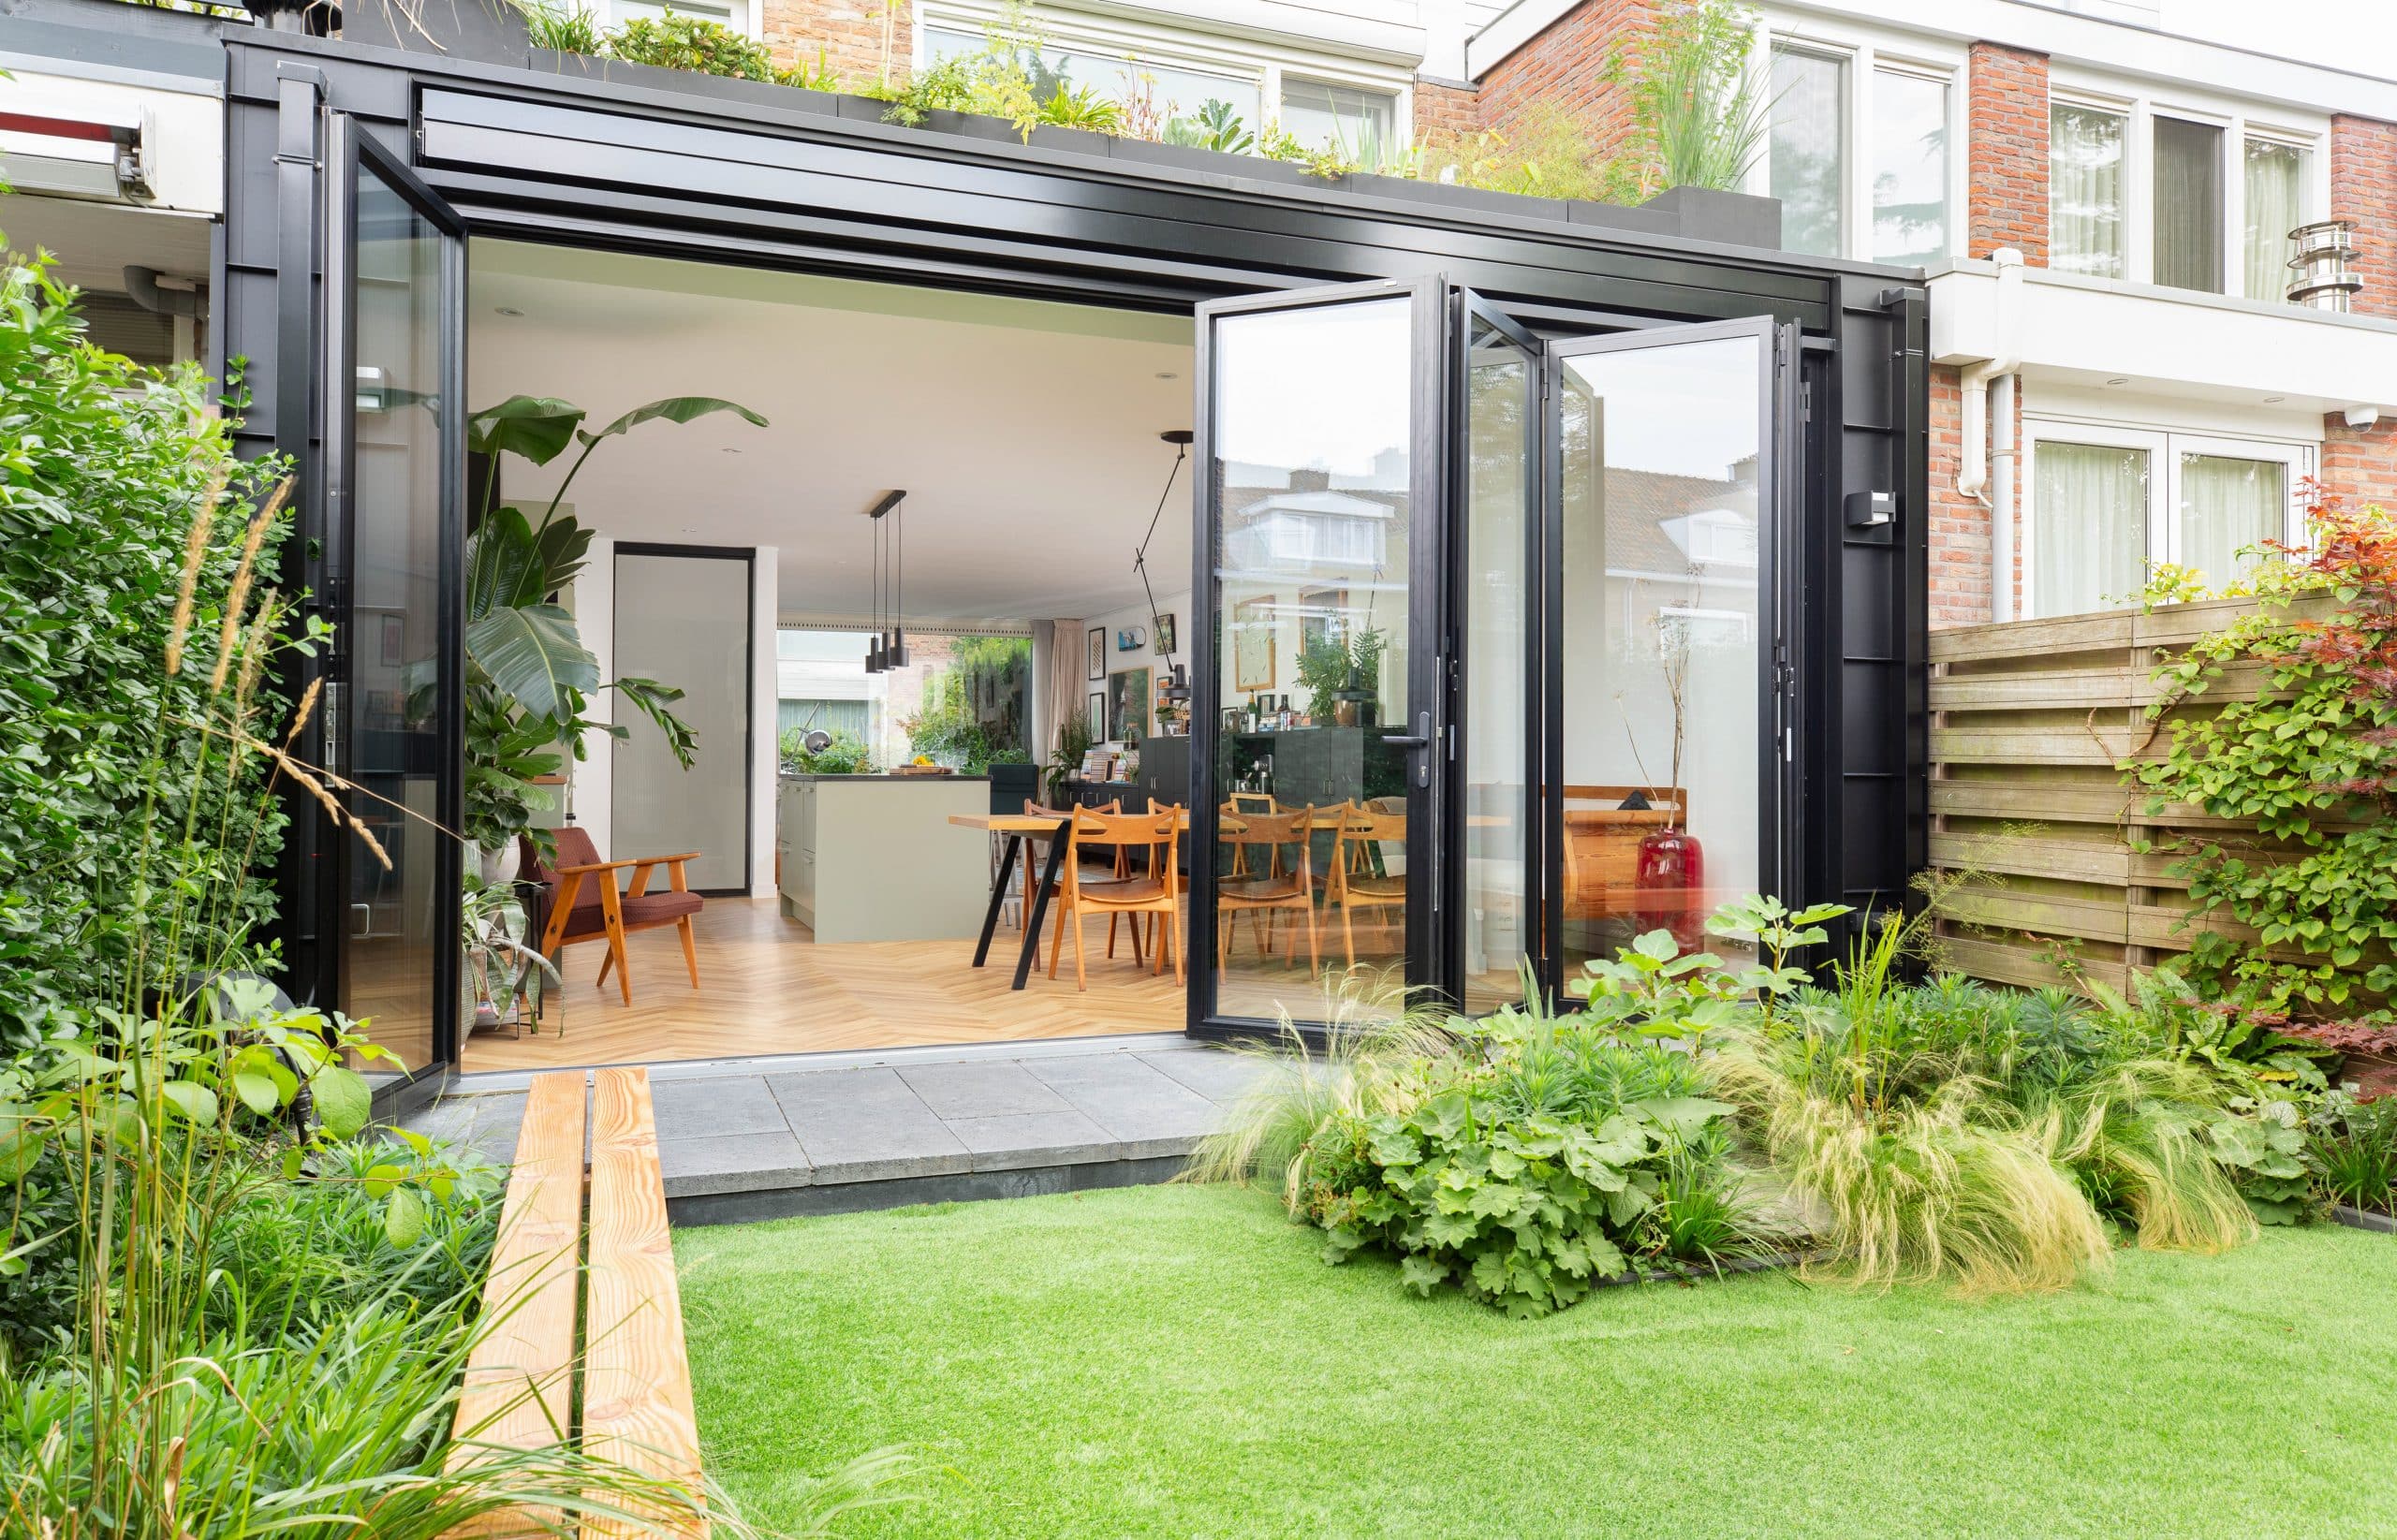 Solarlux zeigt eine Glasfaltwand die Esszimmer und Garten trennt, im Garten sind Pflanzen und eine kleine Terrasse.